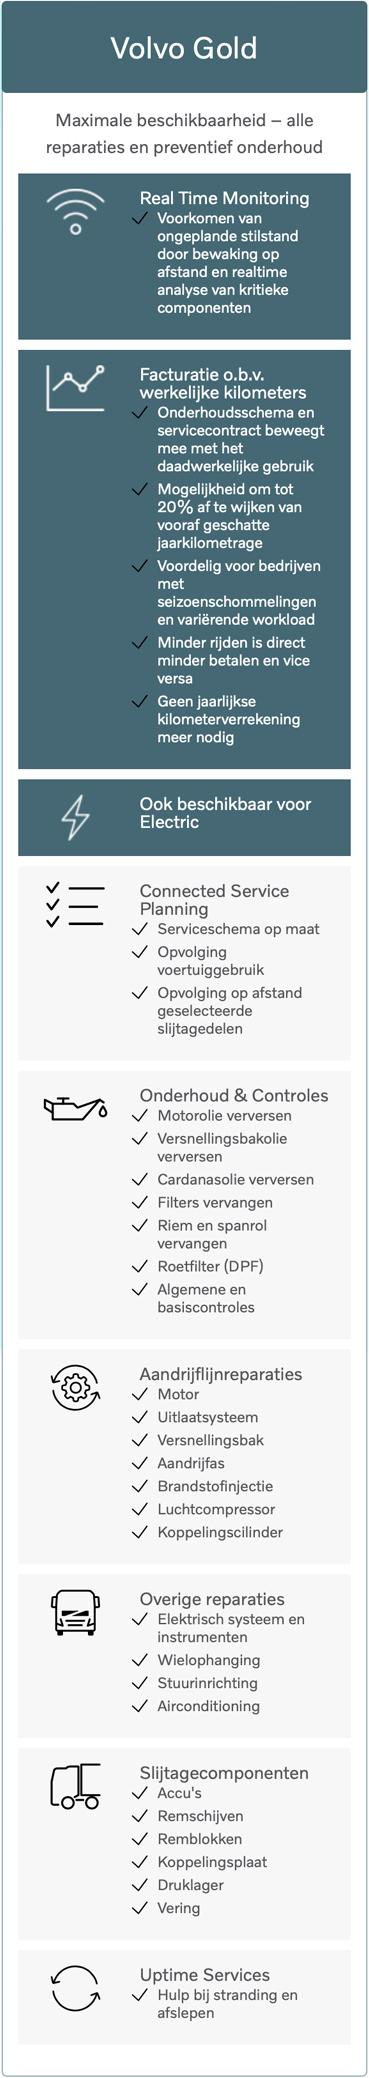 202311-volvo-gold-servicecontract-volvo-trucks-nederland-wat-houdt-het-in